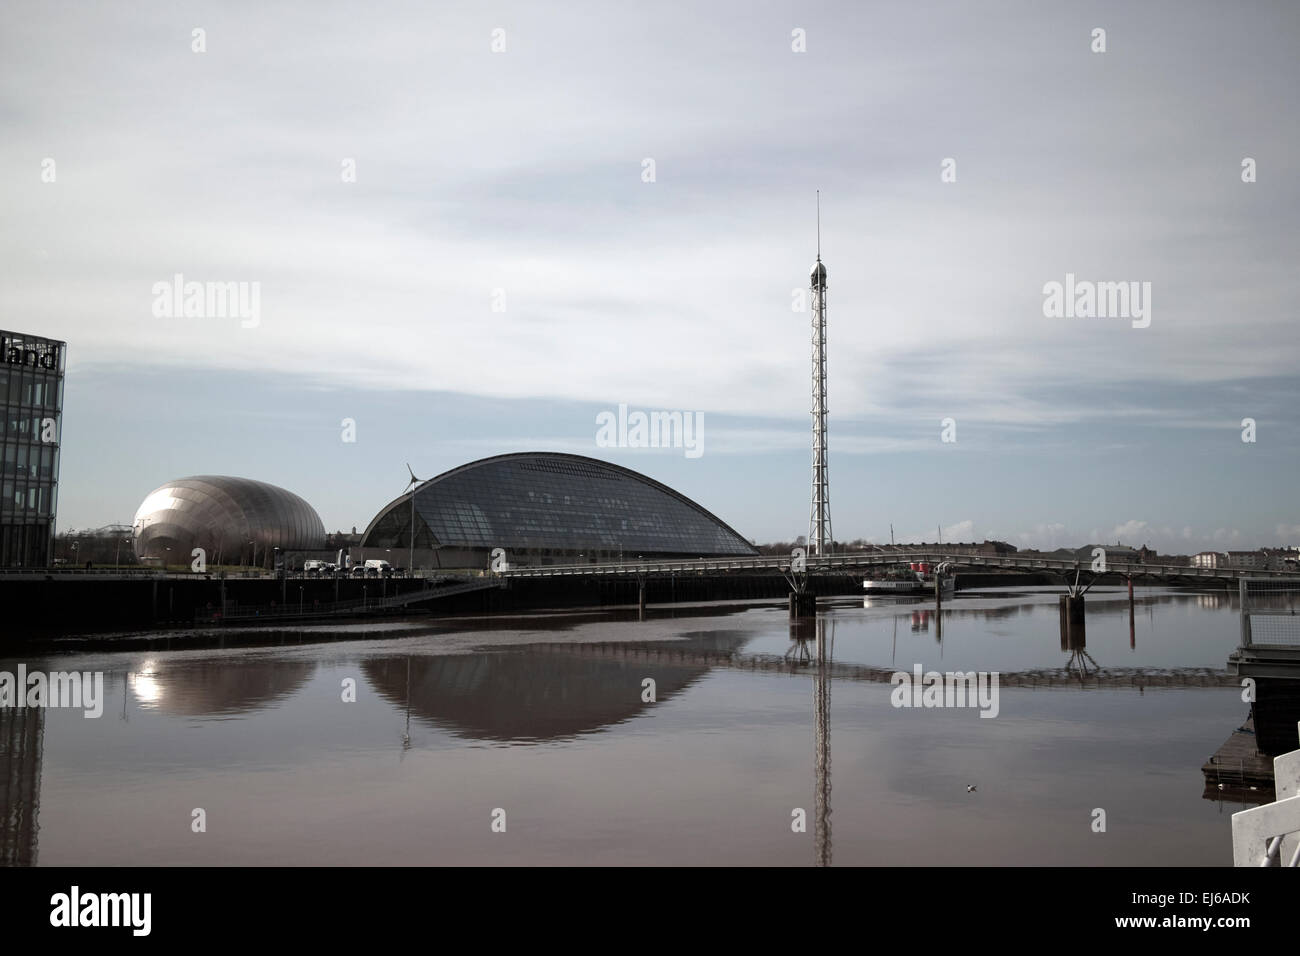 Glasgow Science Centre pacific quay et millennium bridge sur la rivière Clyde en Écosse uk Banque D'Images